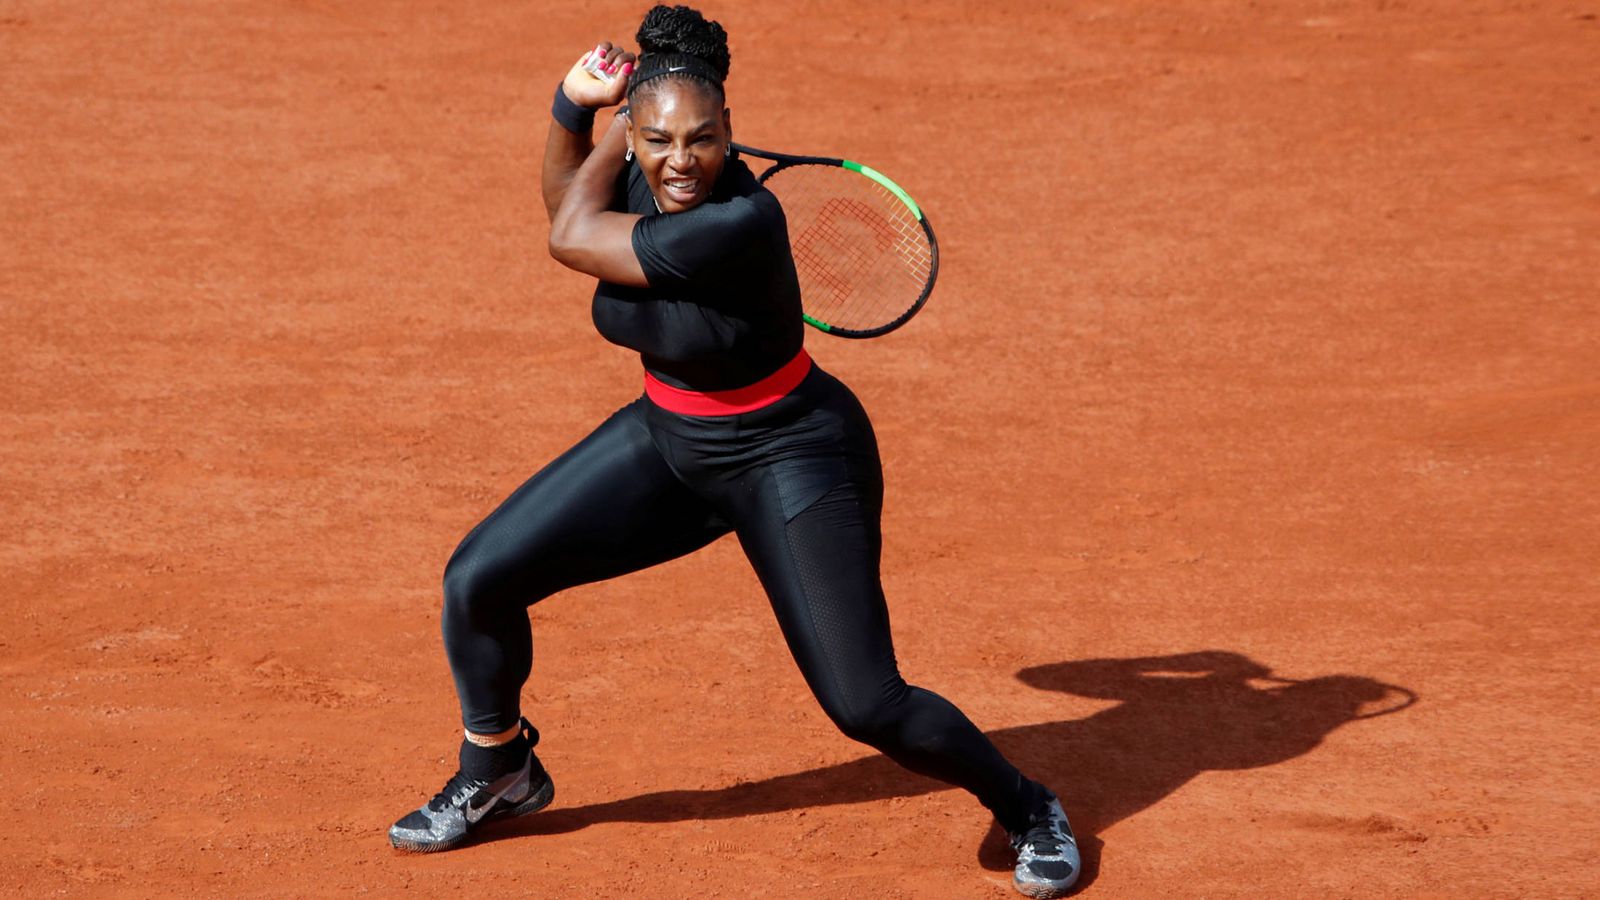 Foto: Serena Williams durante el polémico partido de tenis hace unos días. (Reuters)